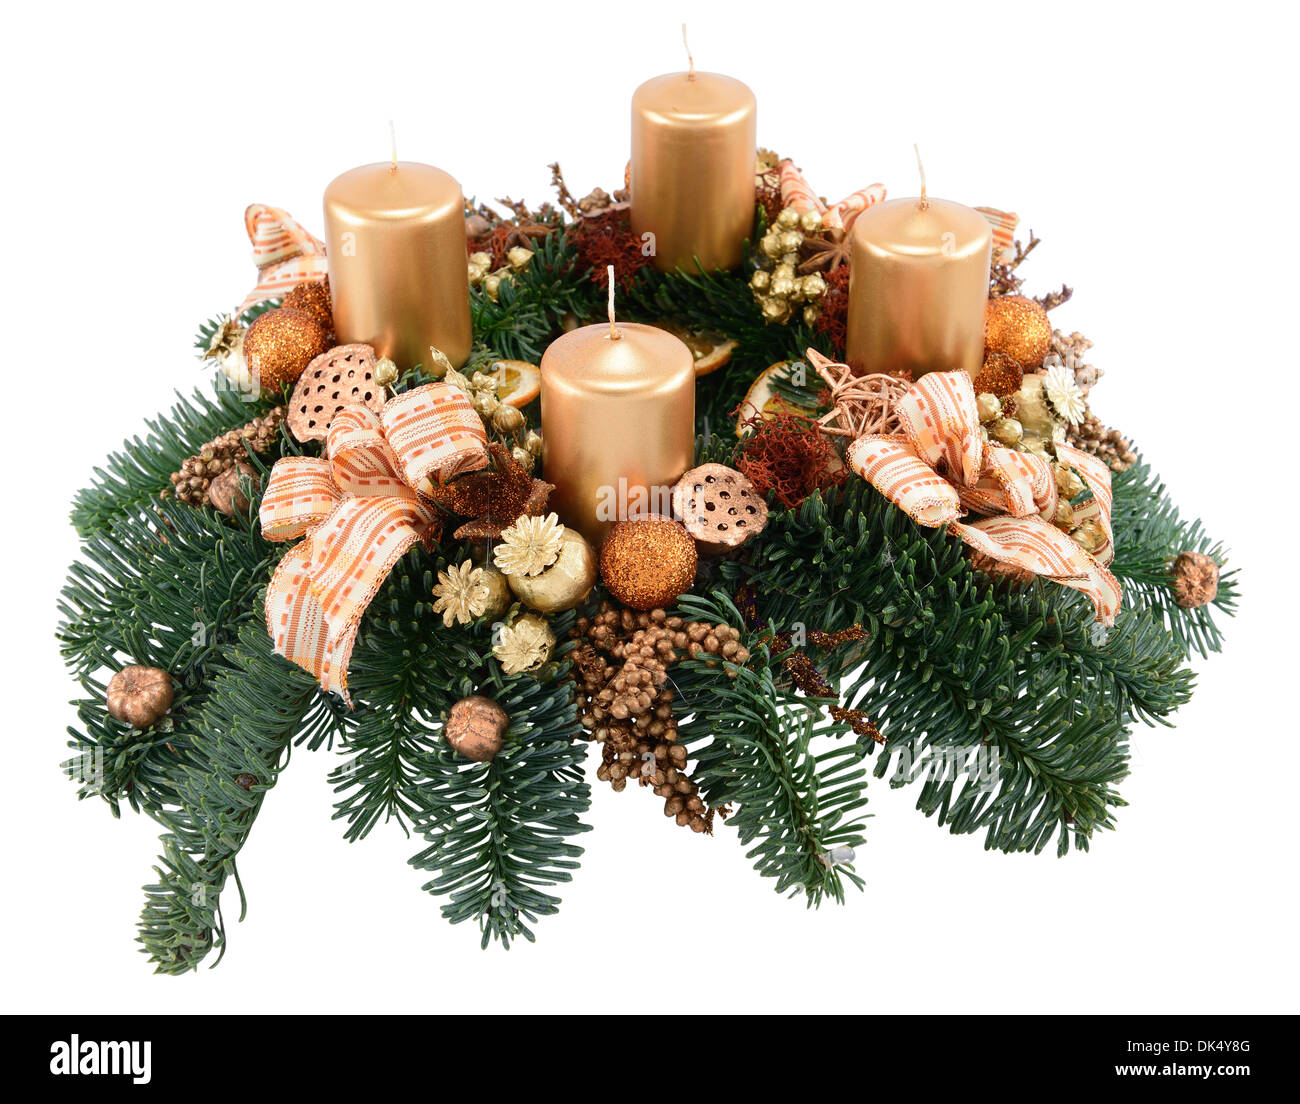 Adventskranz mit vier Kerzen, die isoliert auf weiss Stockfotografie - Alamy